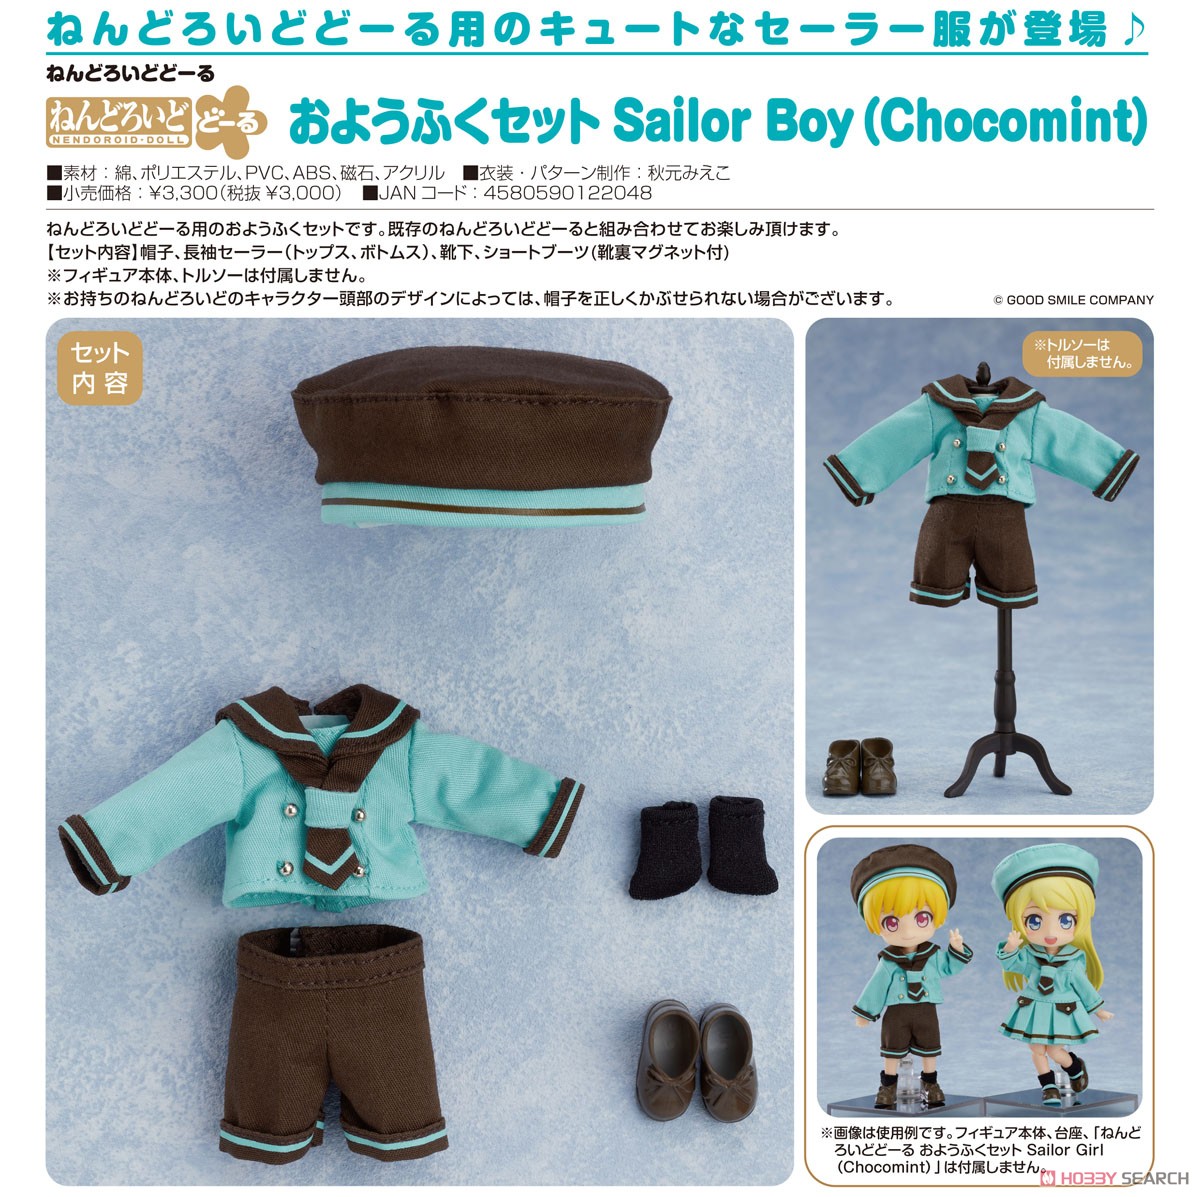 ねんどろいどどーる おようふくセット Sailor Boy (Chocomint) (フィギュア) 商品画像2